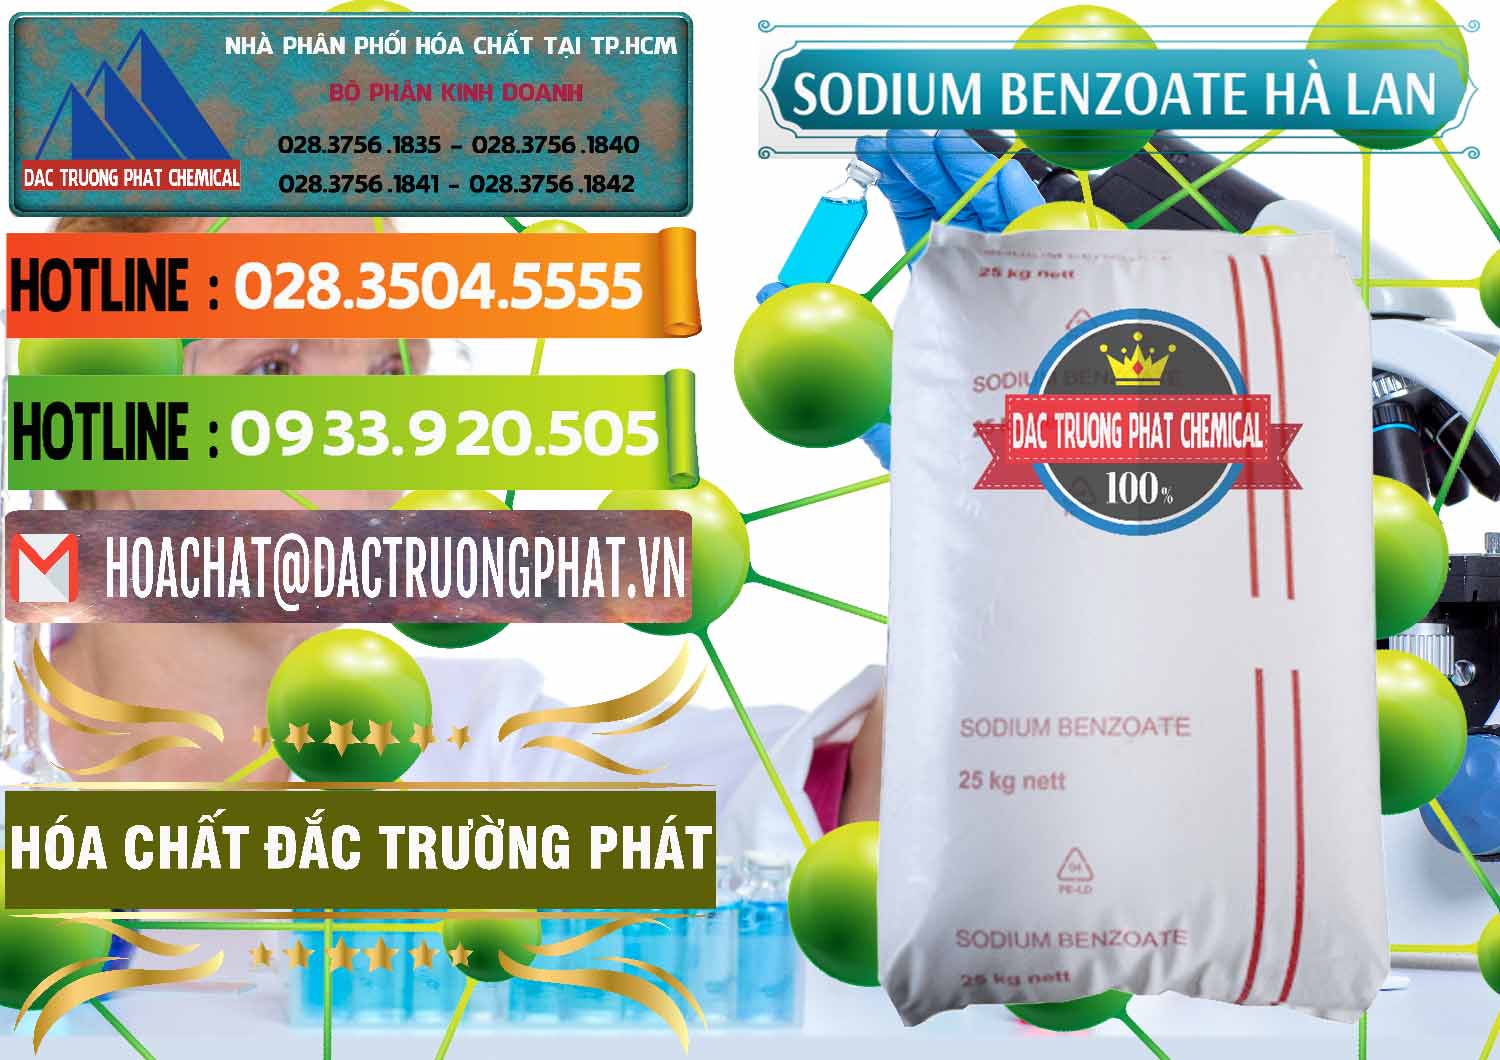 Cty chuyên cung ứng & bán Sodium Benzoate - Mốc Bột Chữ Cam Hà Lan Netherlands - 0360 - Đơn vị phân phối ( bán ) hóa chất tại TP.HCM - cungcaphoachat.com.vn